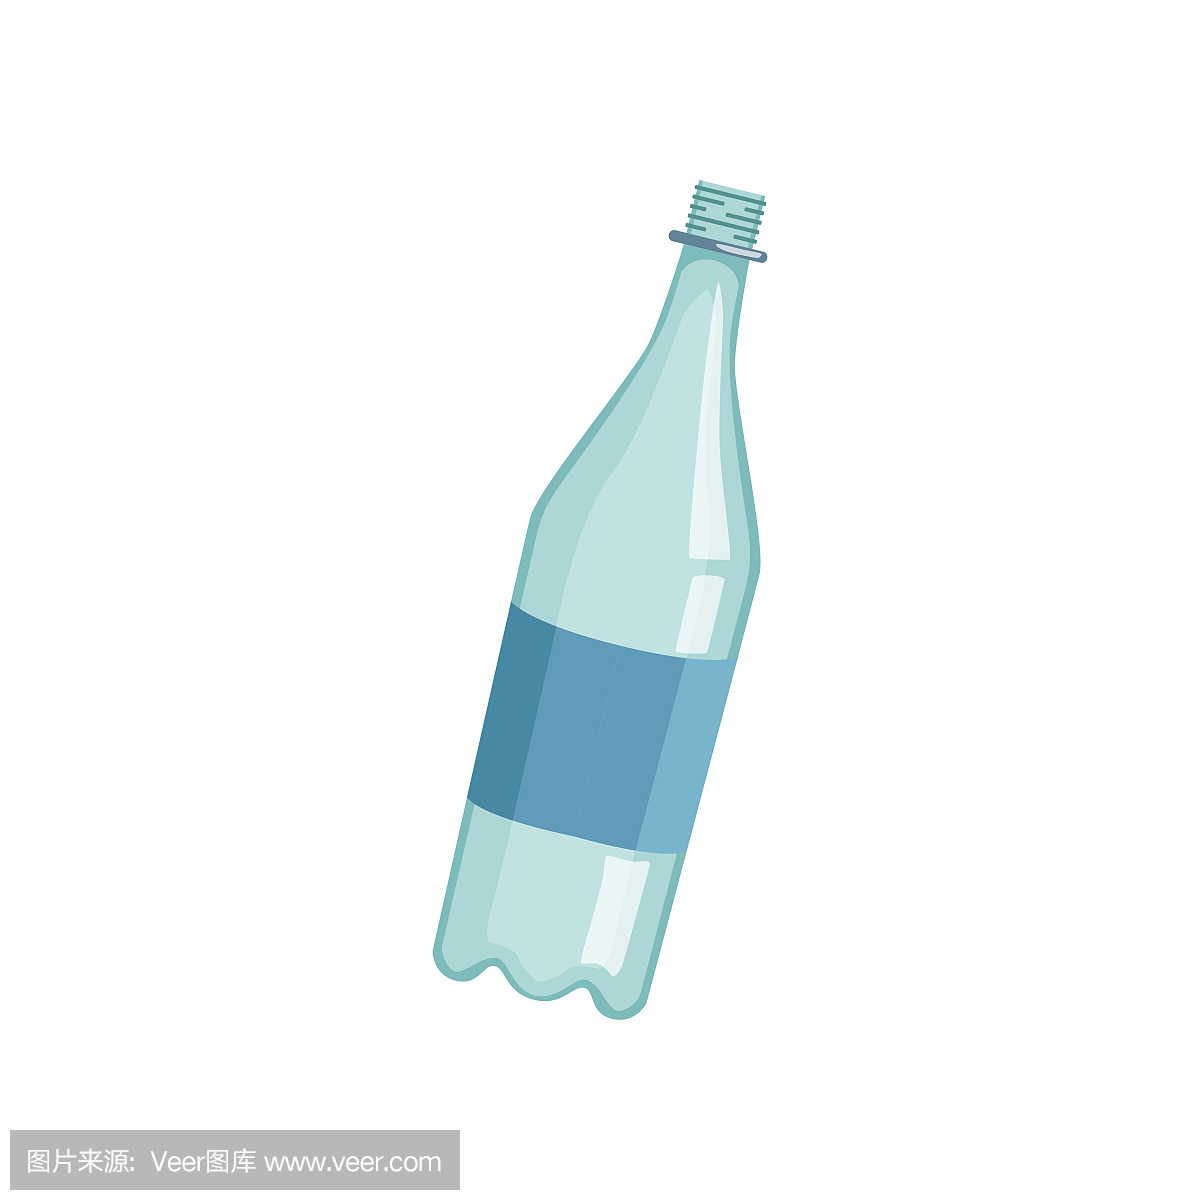 空的塑料瓶,回收垃圾概念,利用废物矢量图在白